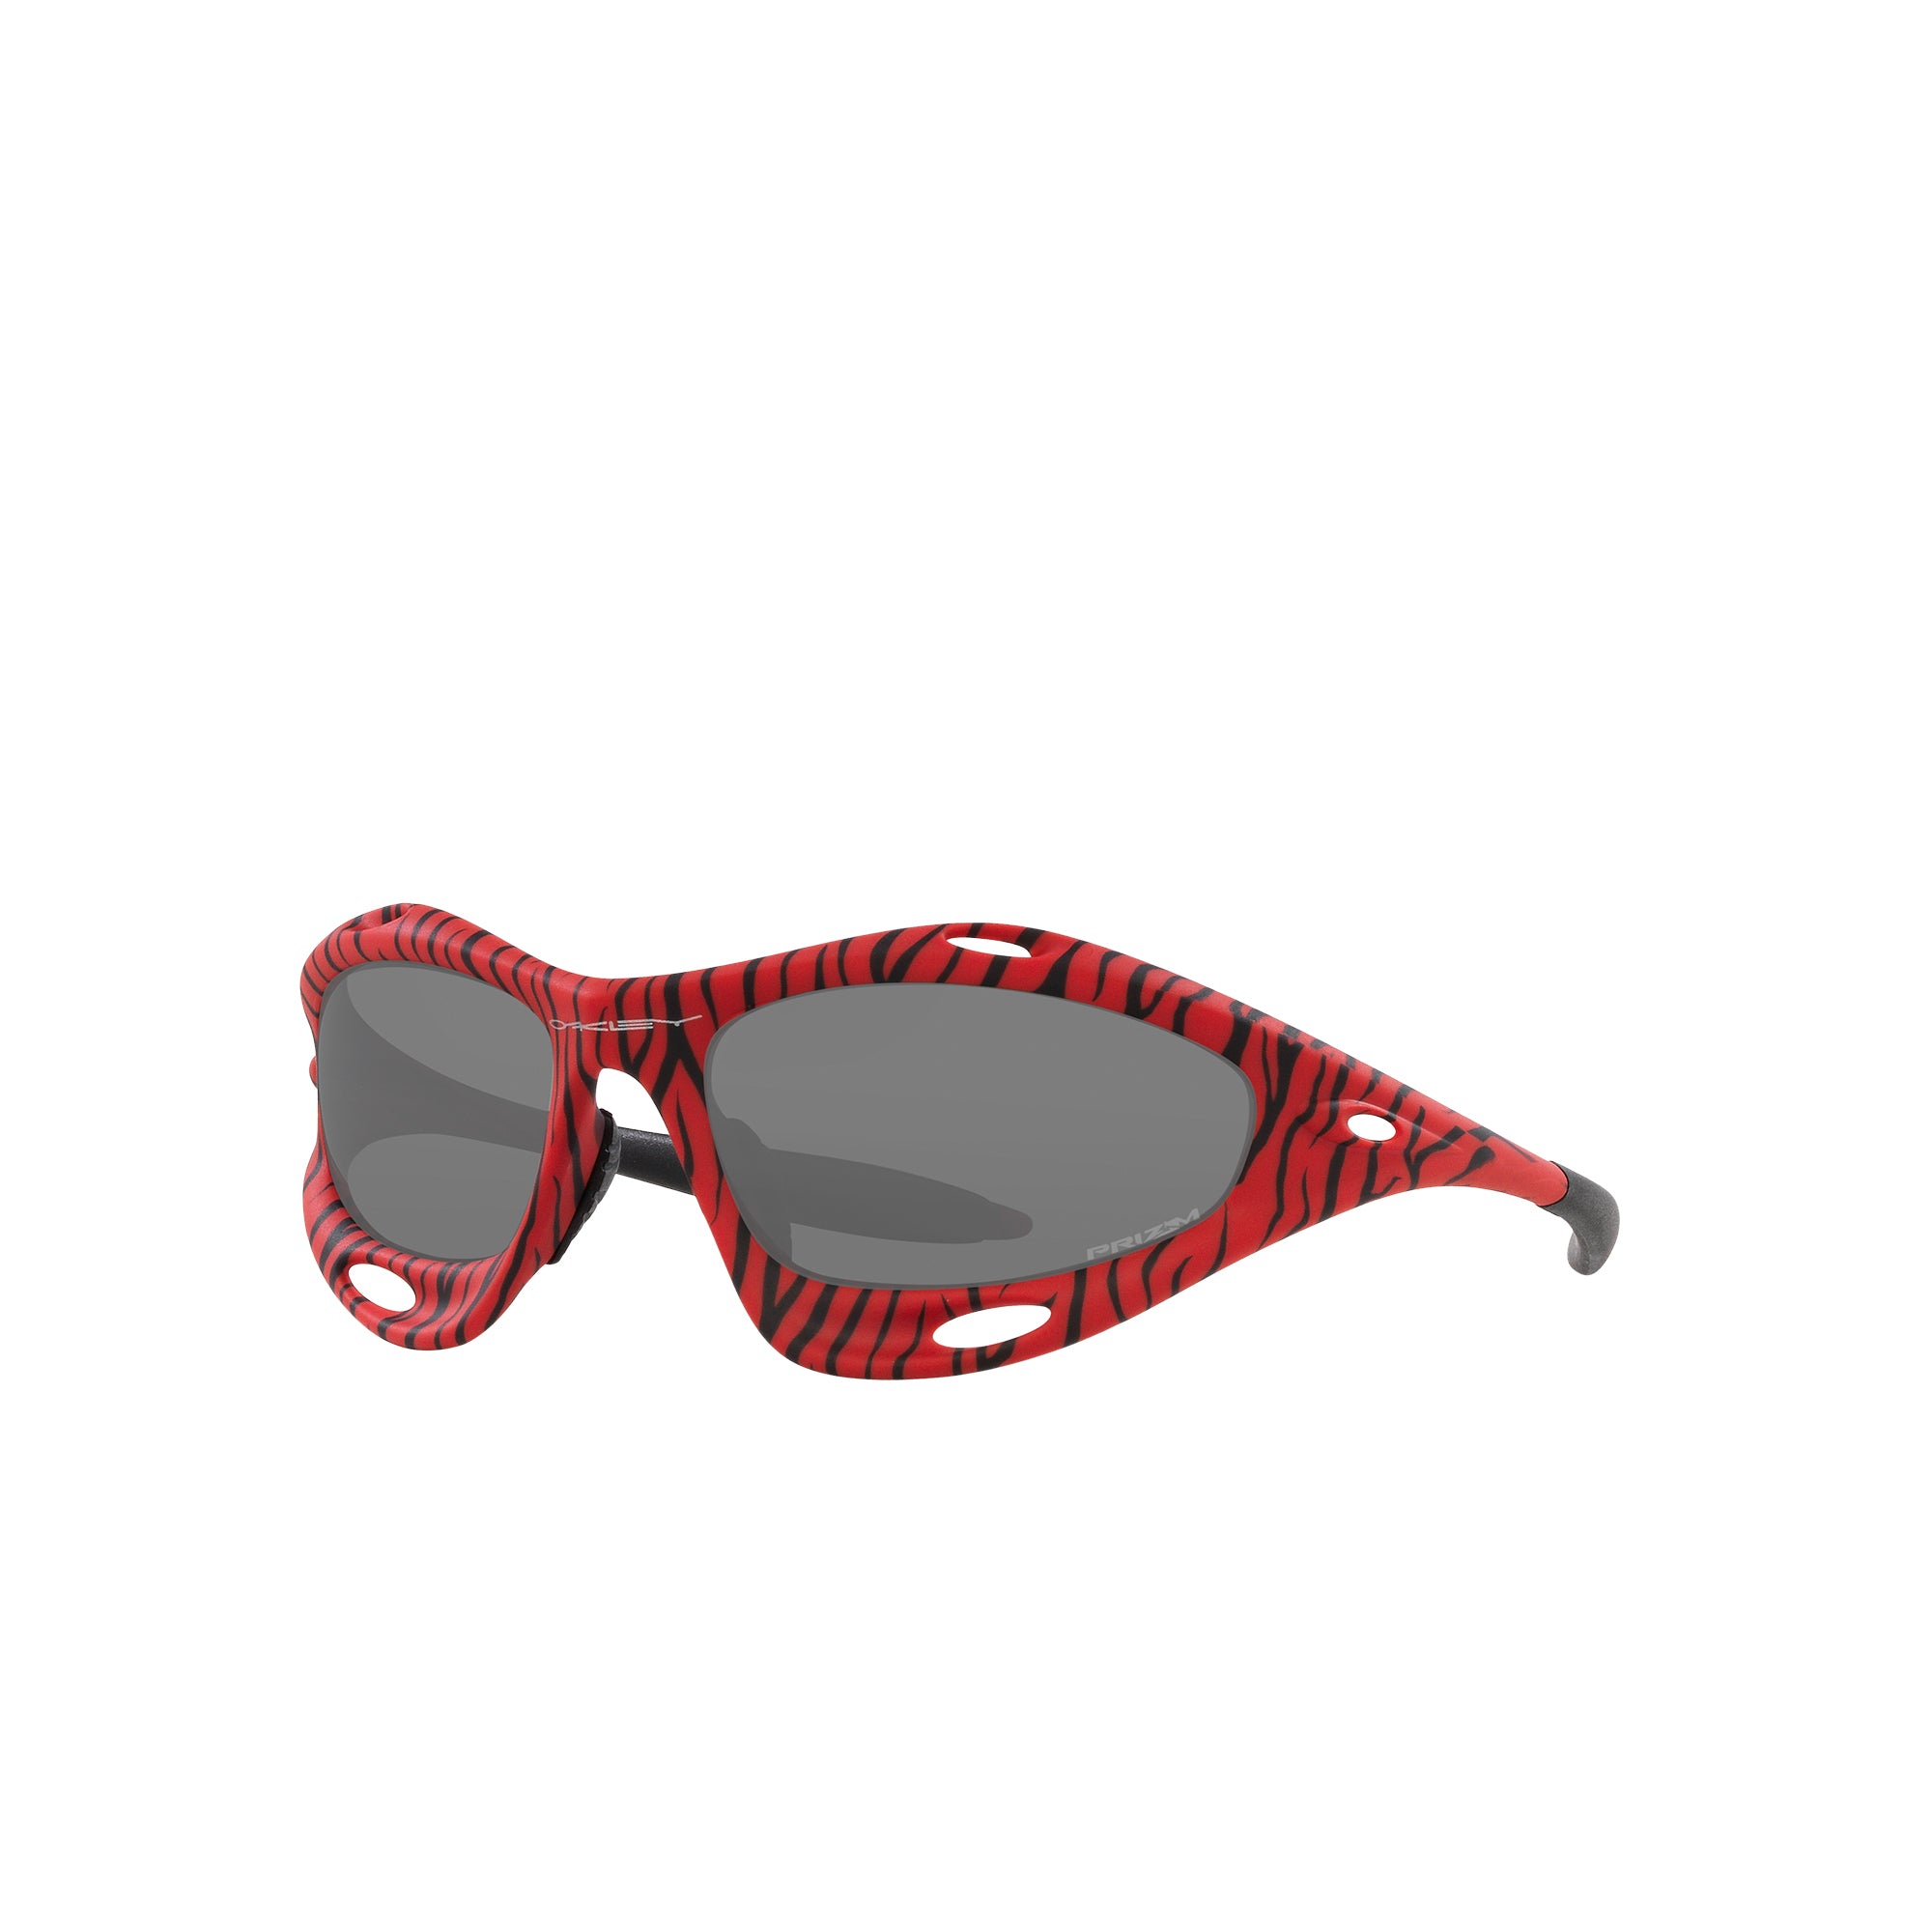 Elliotte - Red Ski Goggles For Men & Women